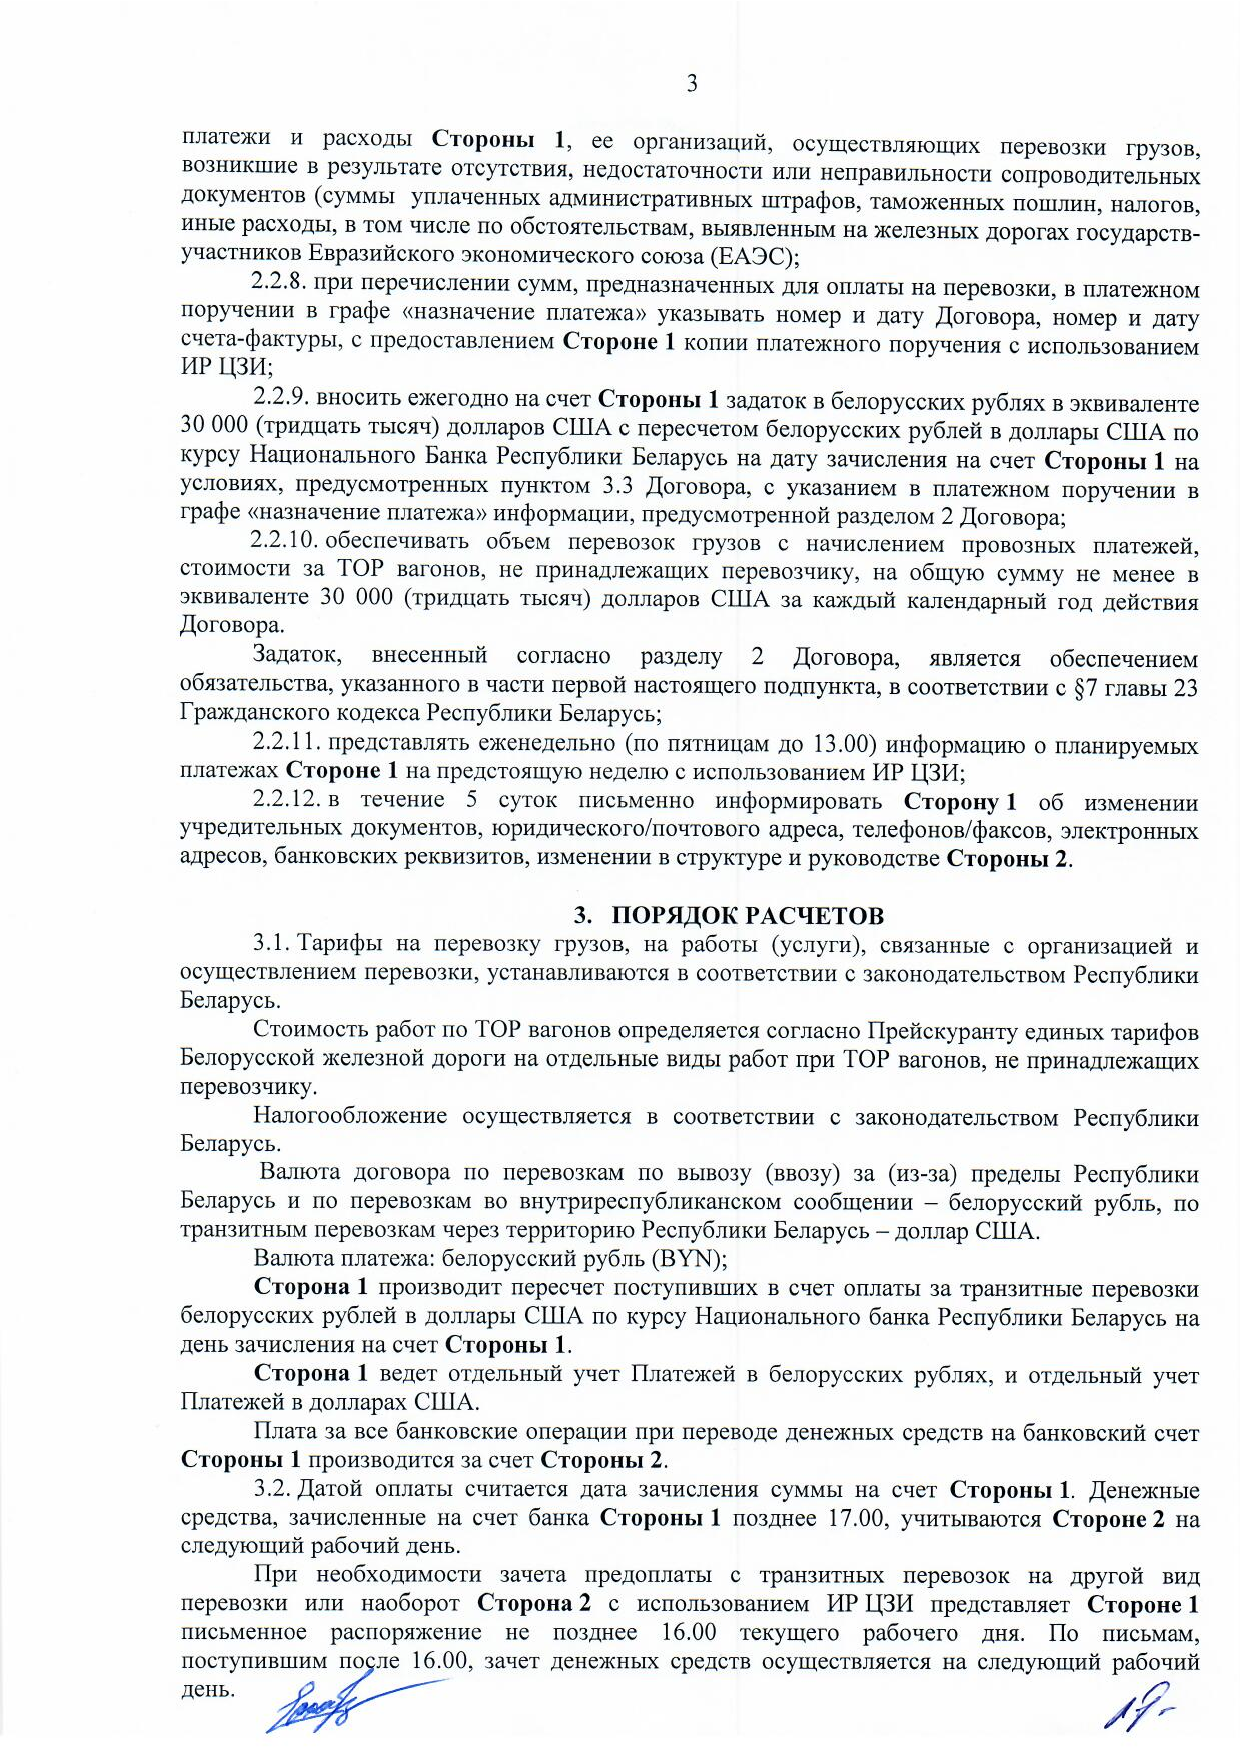 Договор между БЖД и ООО «Логистик Энерджи» от 29.11.2021 № ИРЦ/Ю-710 (Страница 3)